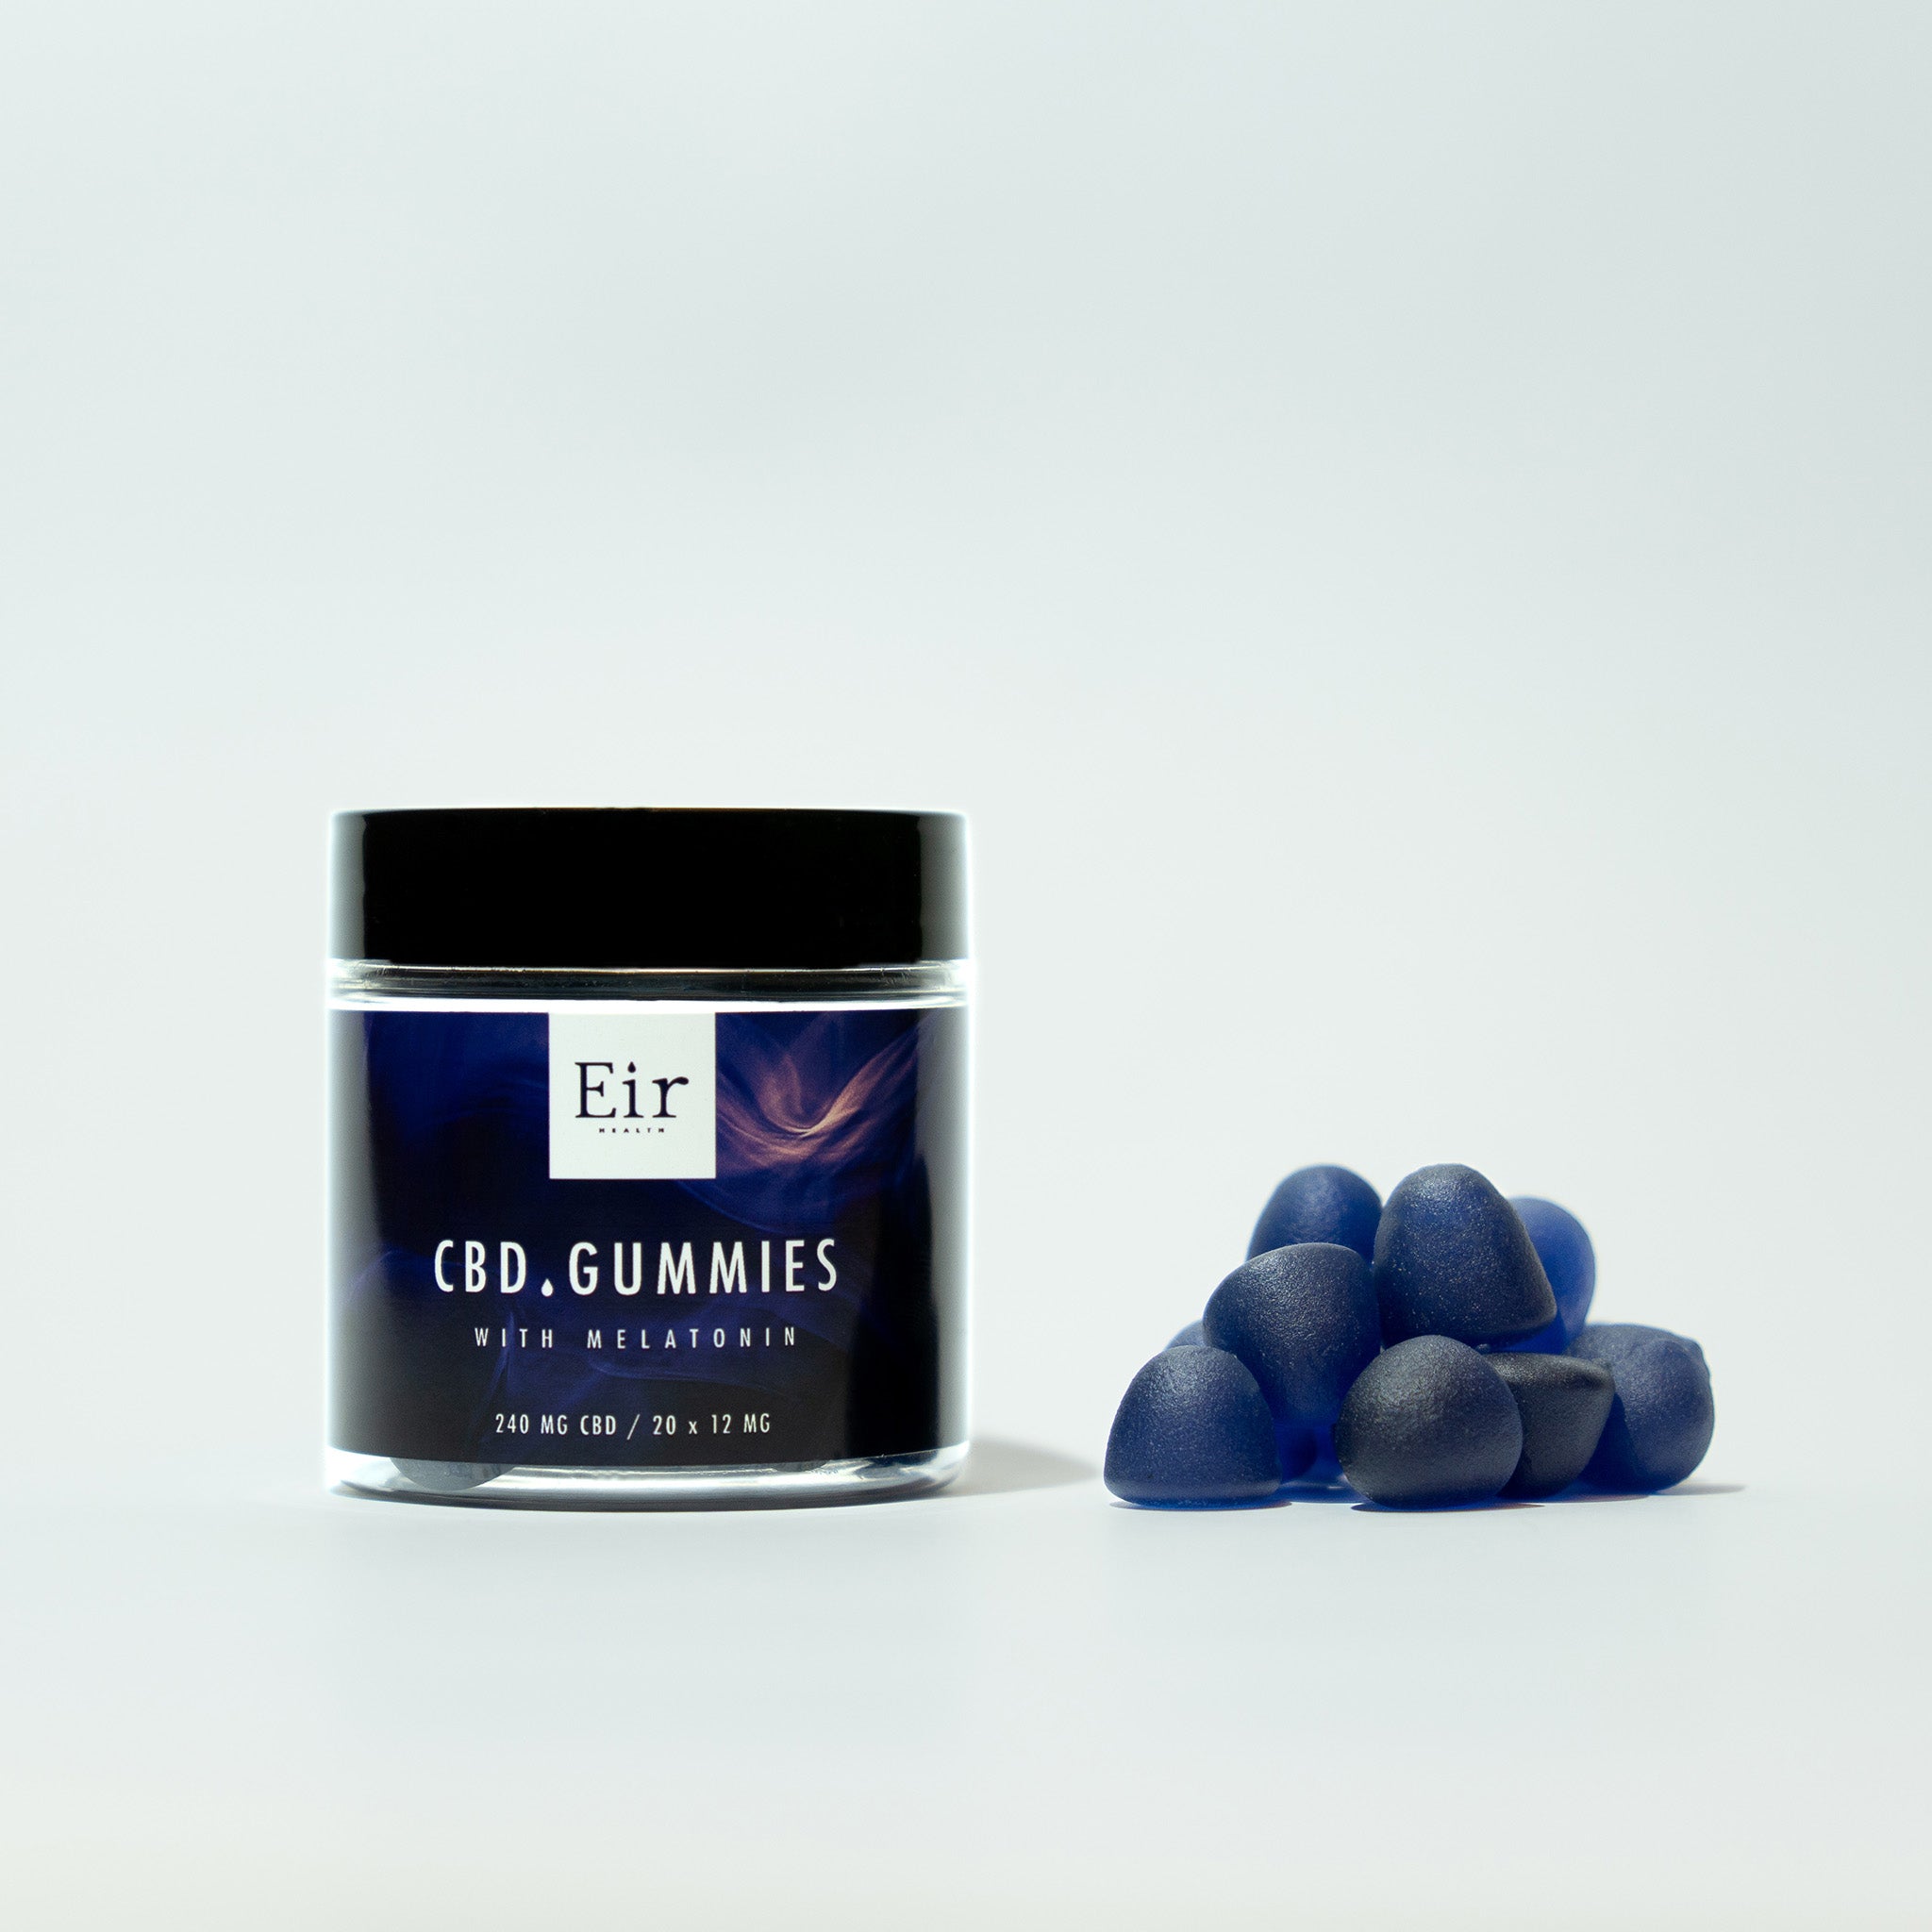 "Słoik Eir CBD Gummies z melatoniną obok stosu niebieskich żelków CBD, 240 mg CBD, prezentacja produktu na białym tle.